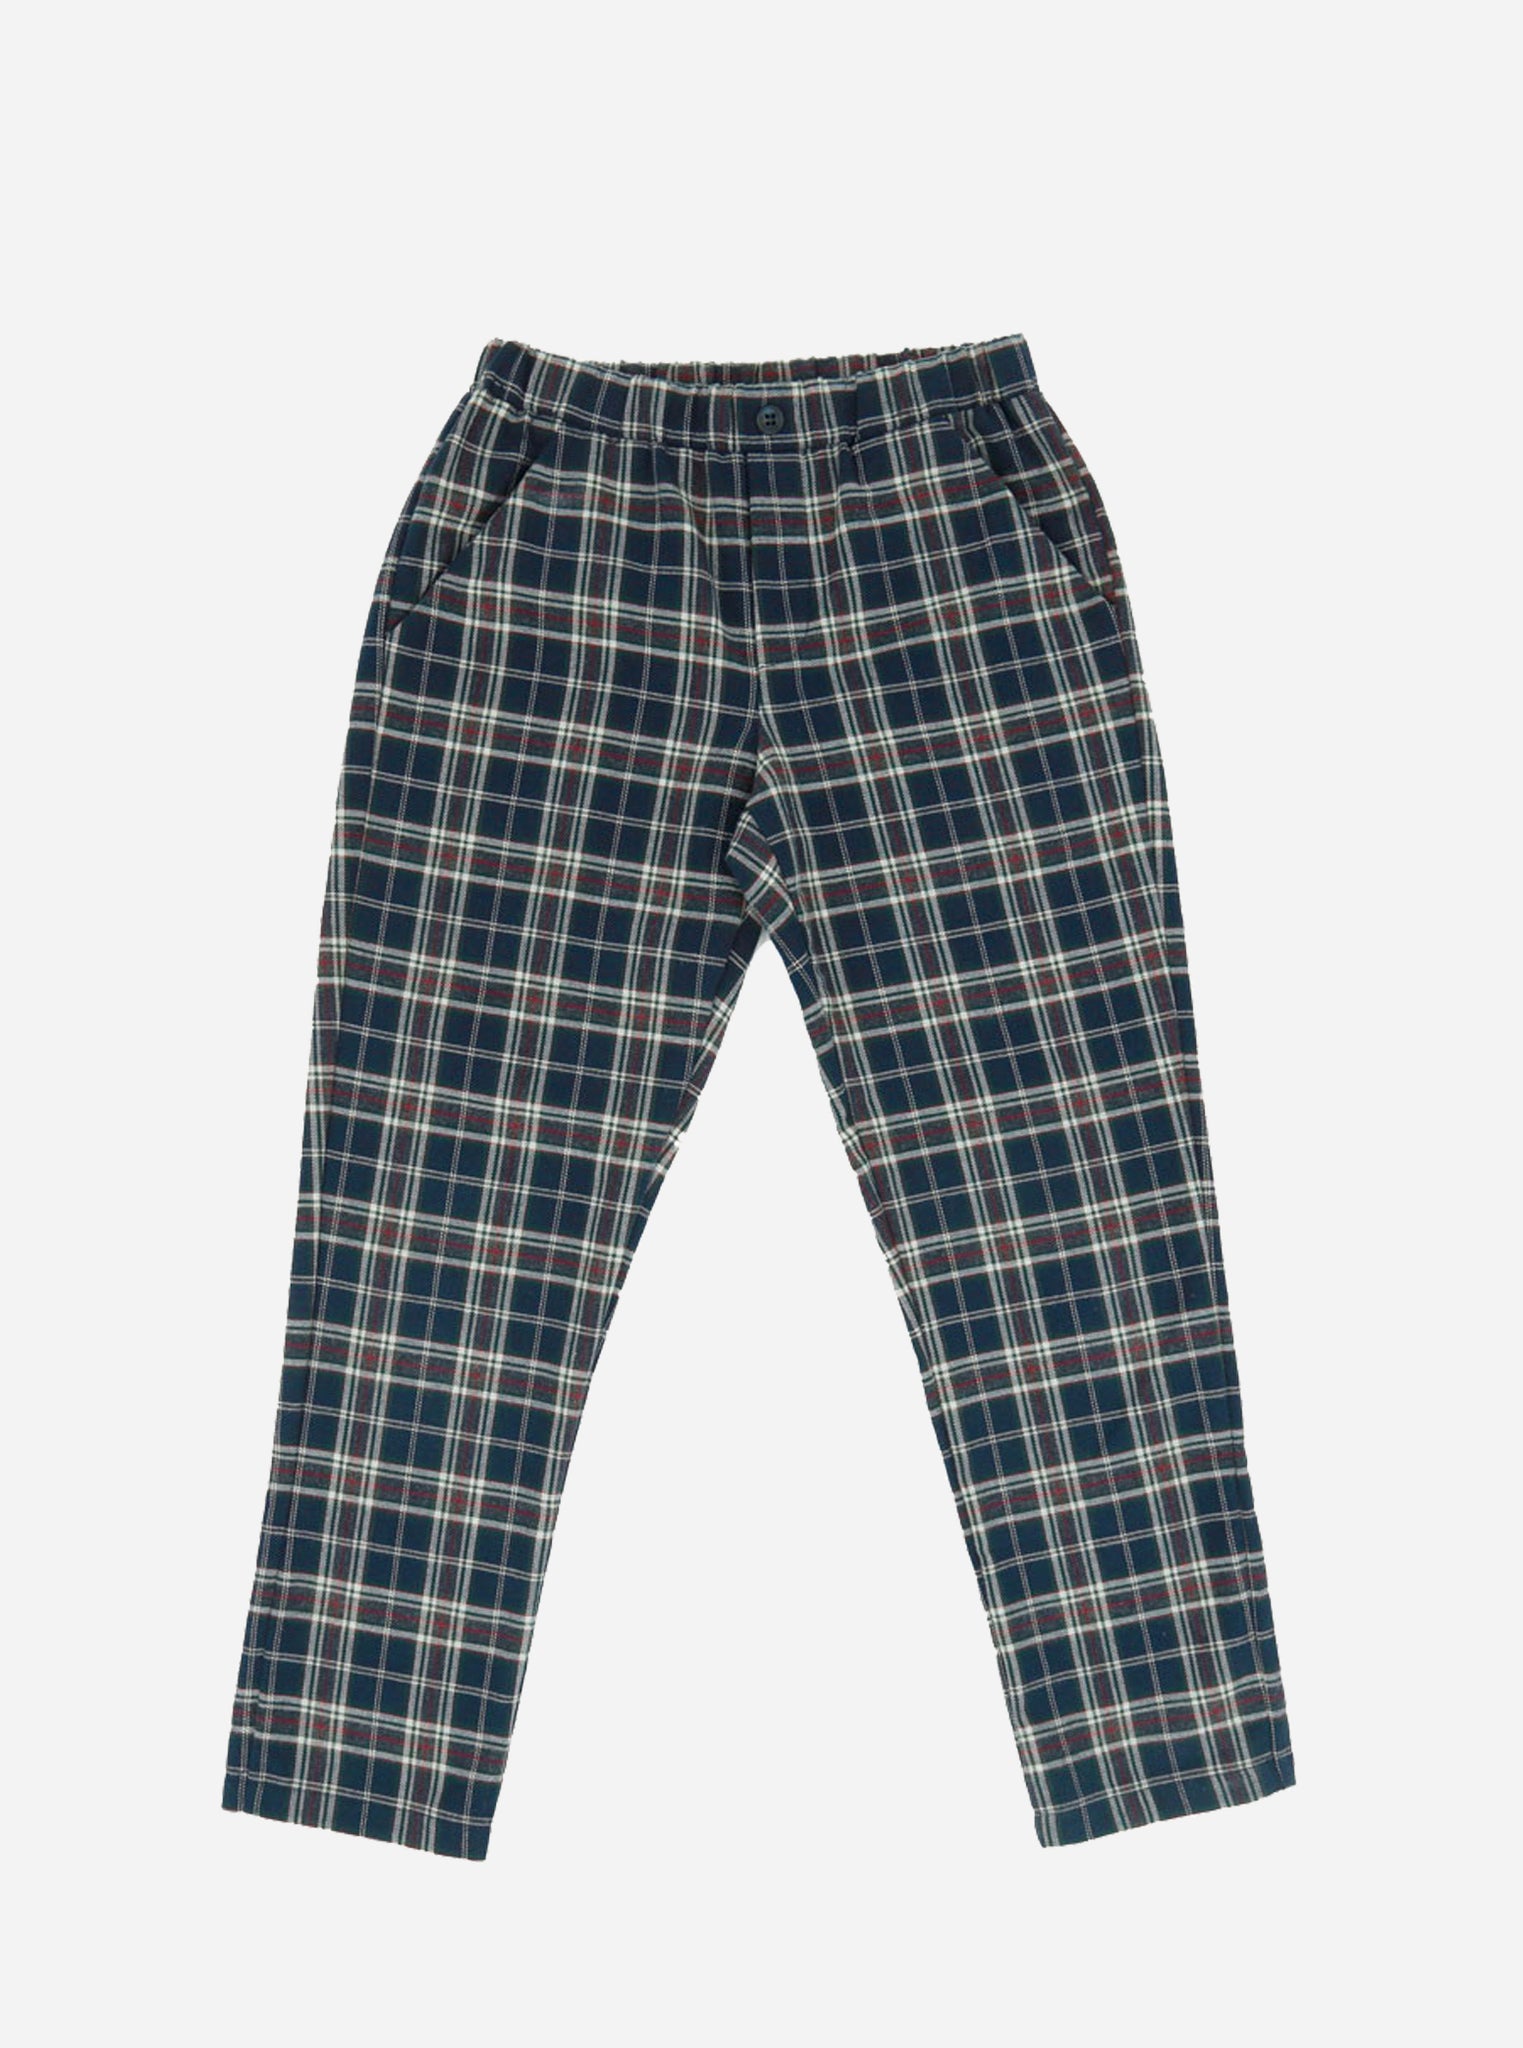 Pantalone tartan ROBERTO-OUTLET Pantaloni e Shorts-I Leoncini Shop